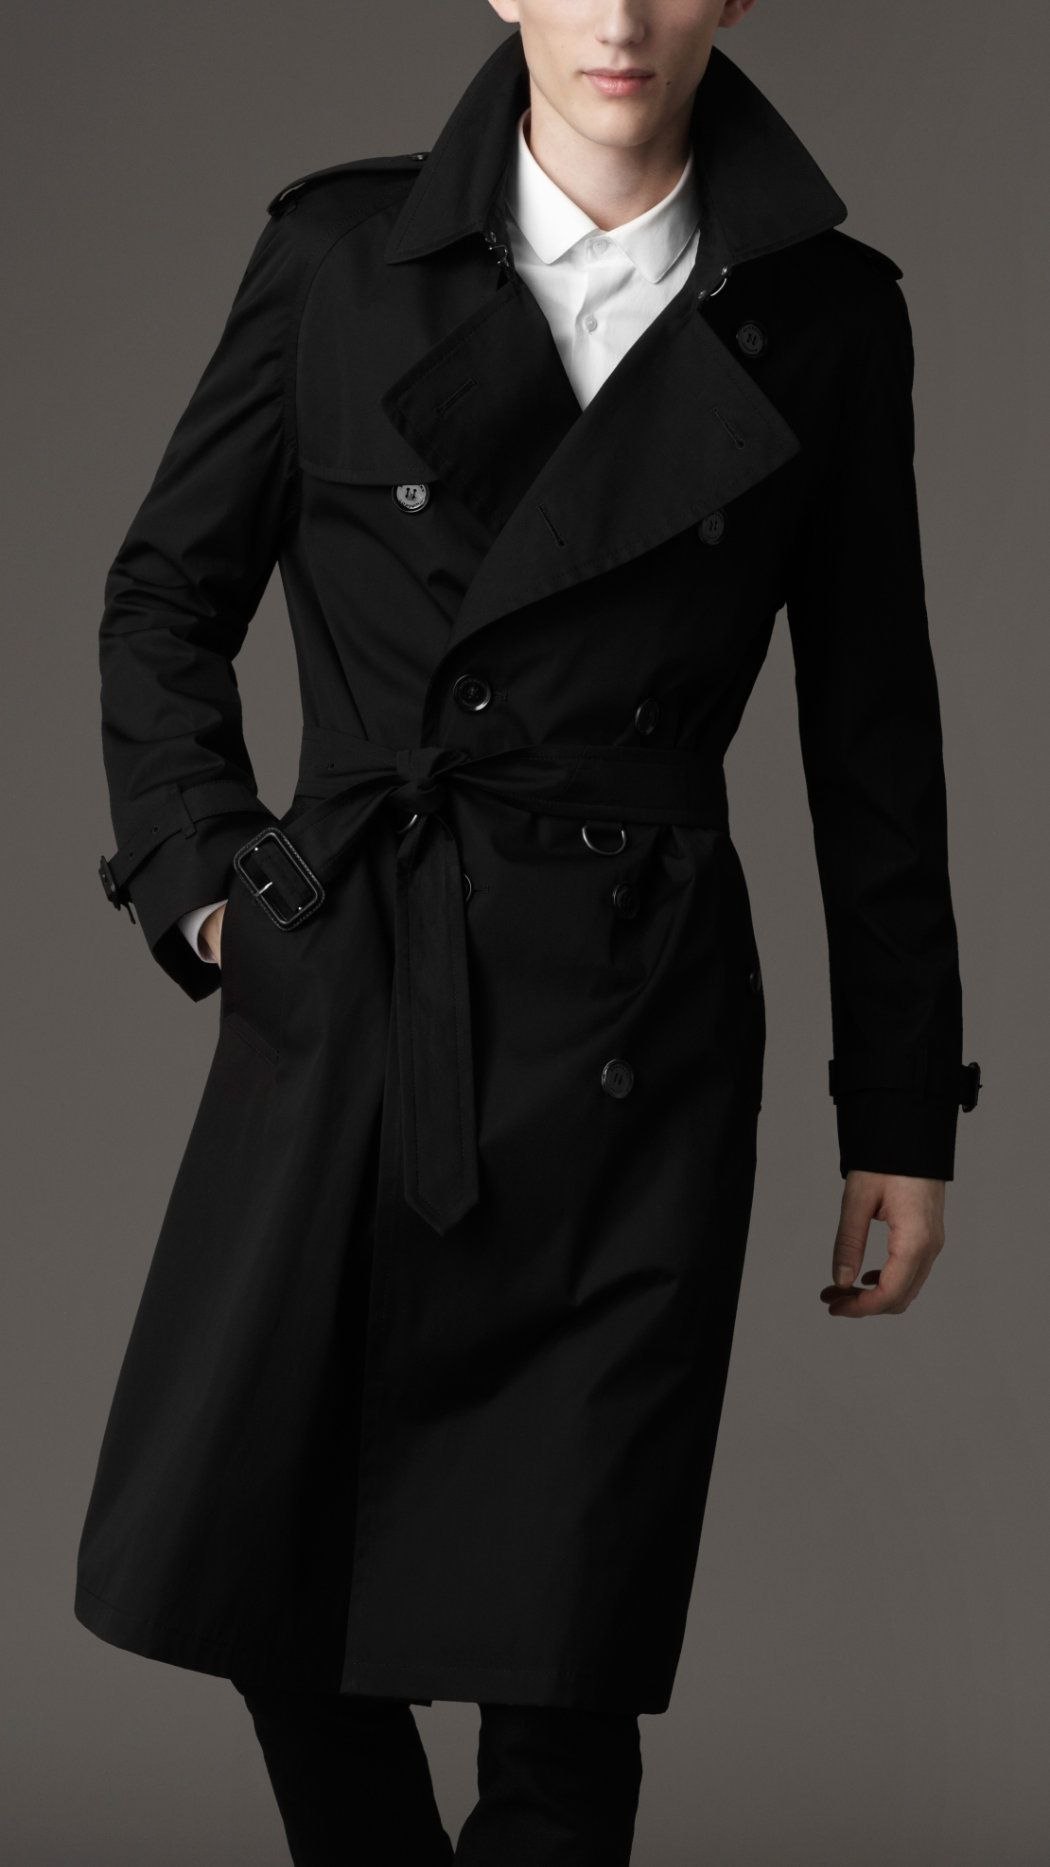 Темное пальто мужское. Тренч Burberry черный. Trench Coat черный плащ. Пальто Trench Coat мужской. Пальто Burberry мужское черное 2010.